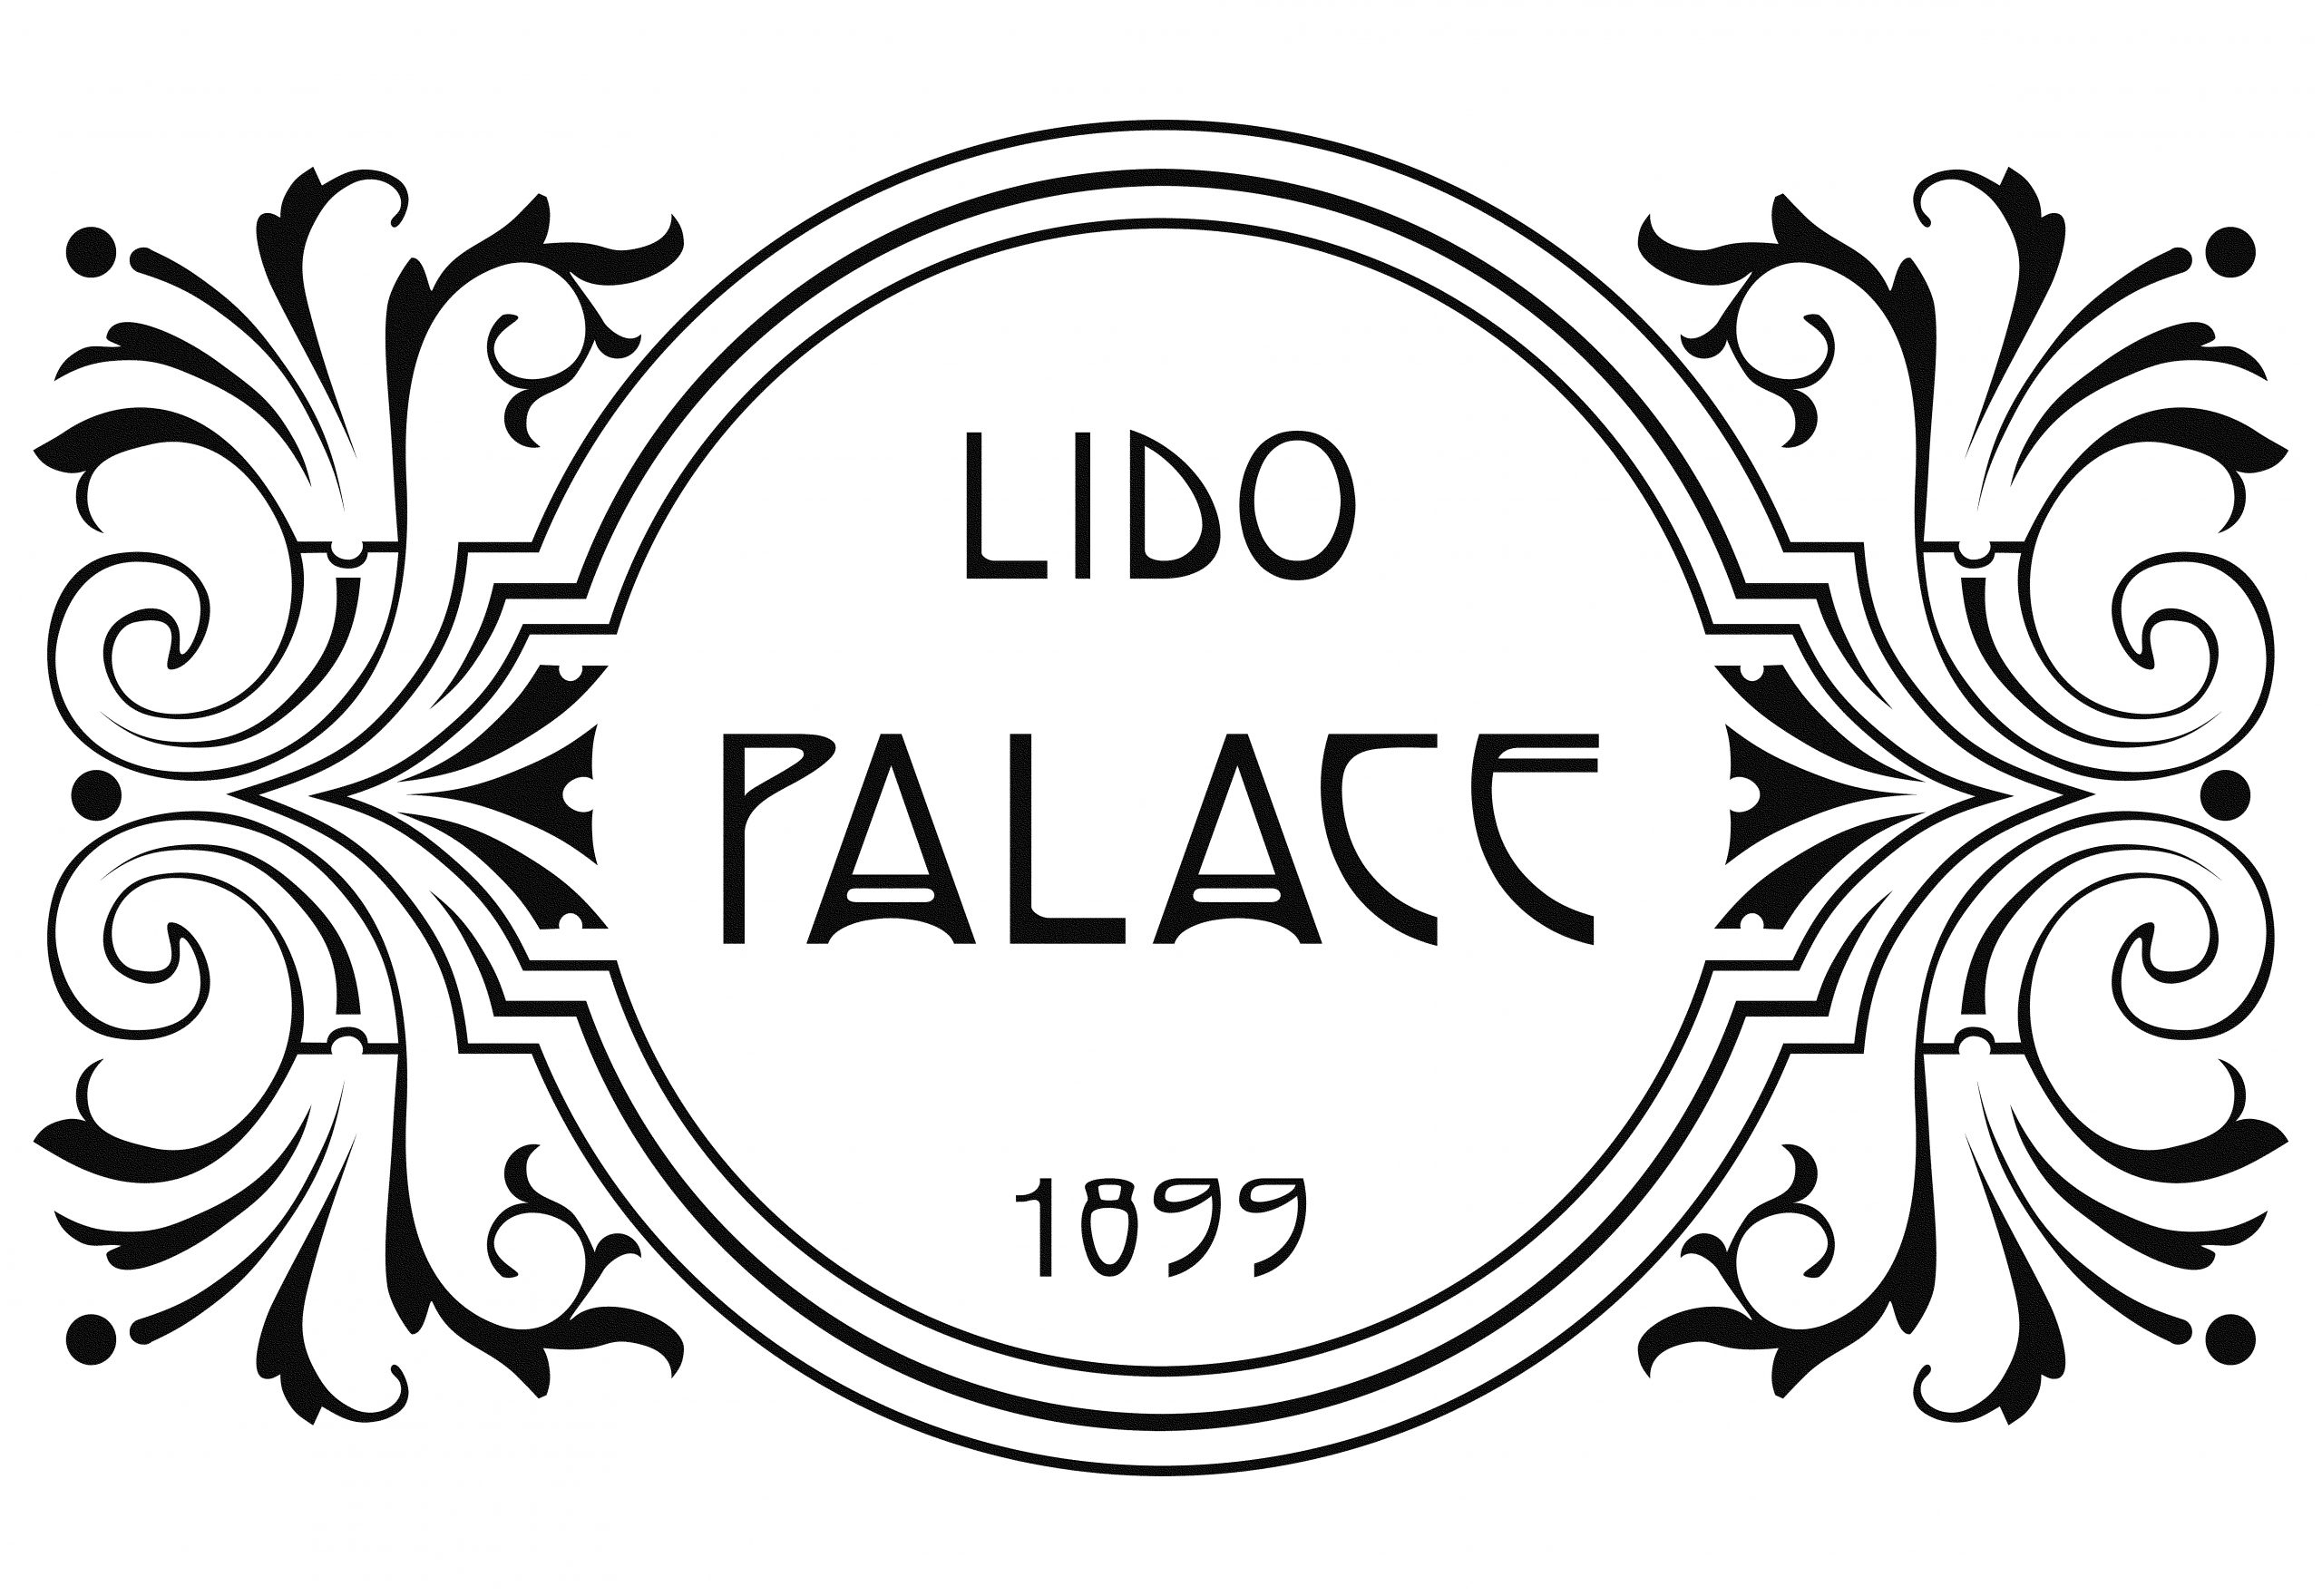 LIDO PALACE LOGO